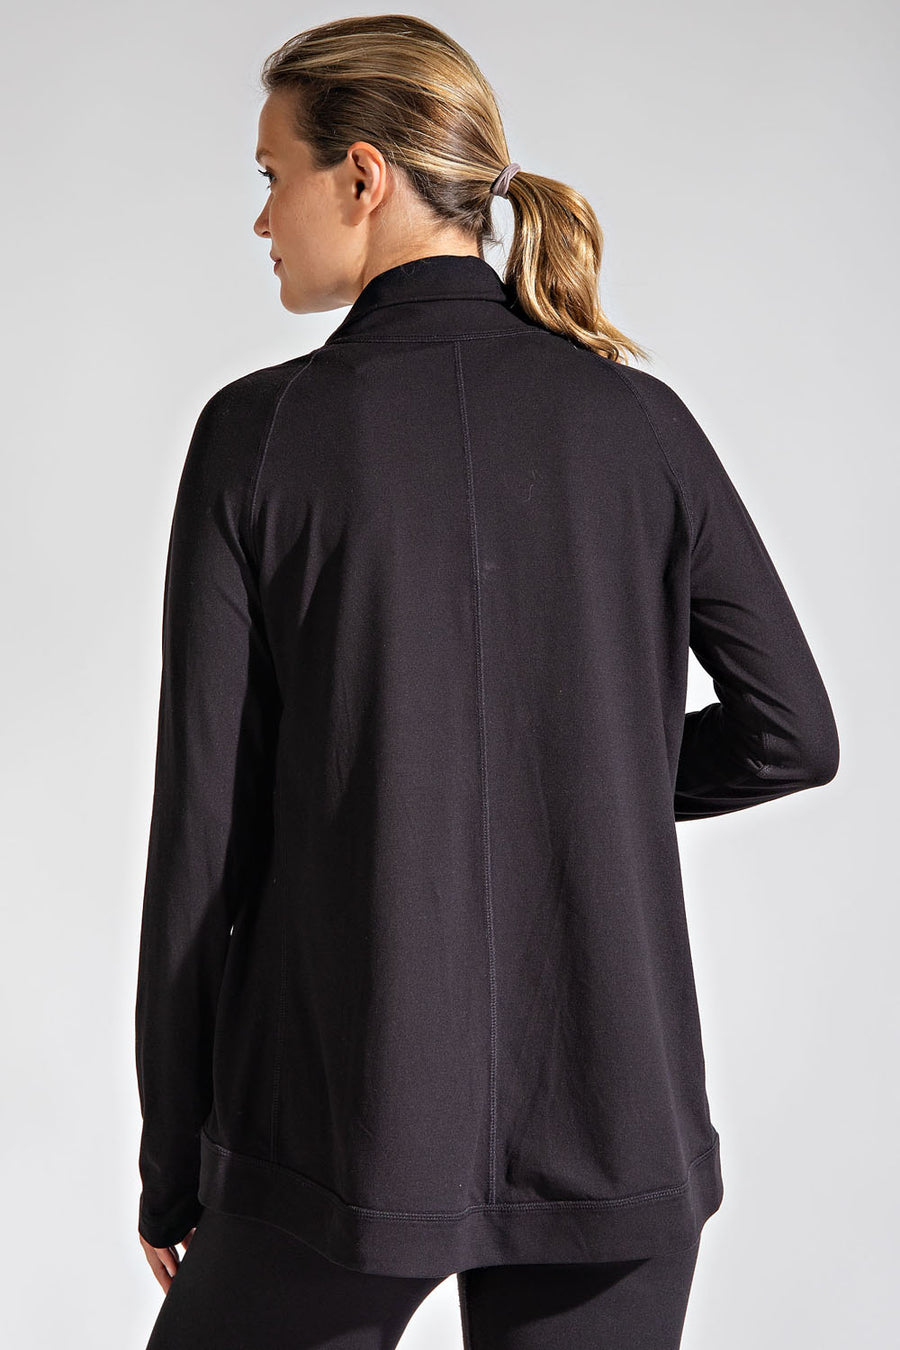 Asymmetrical Cowl Neck Jacket